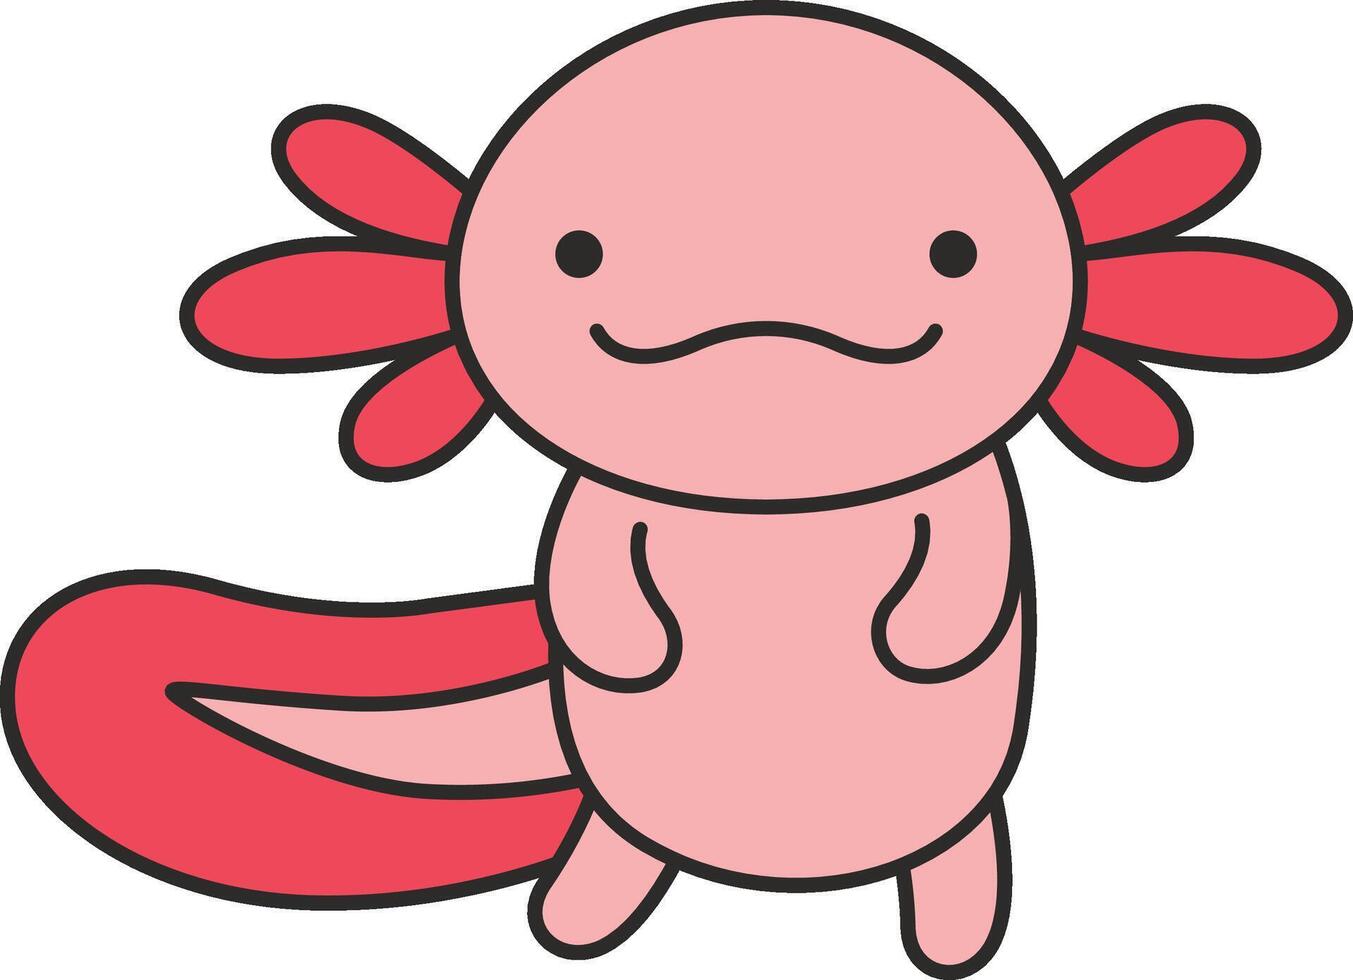 Cute cartoon axolotl illustration vector